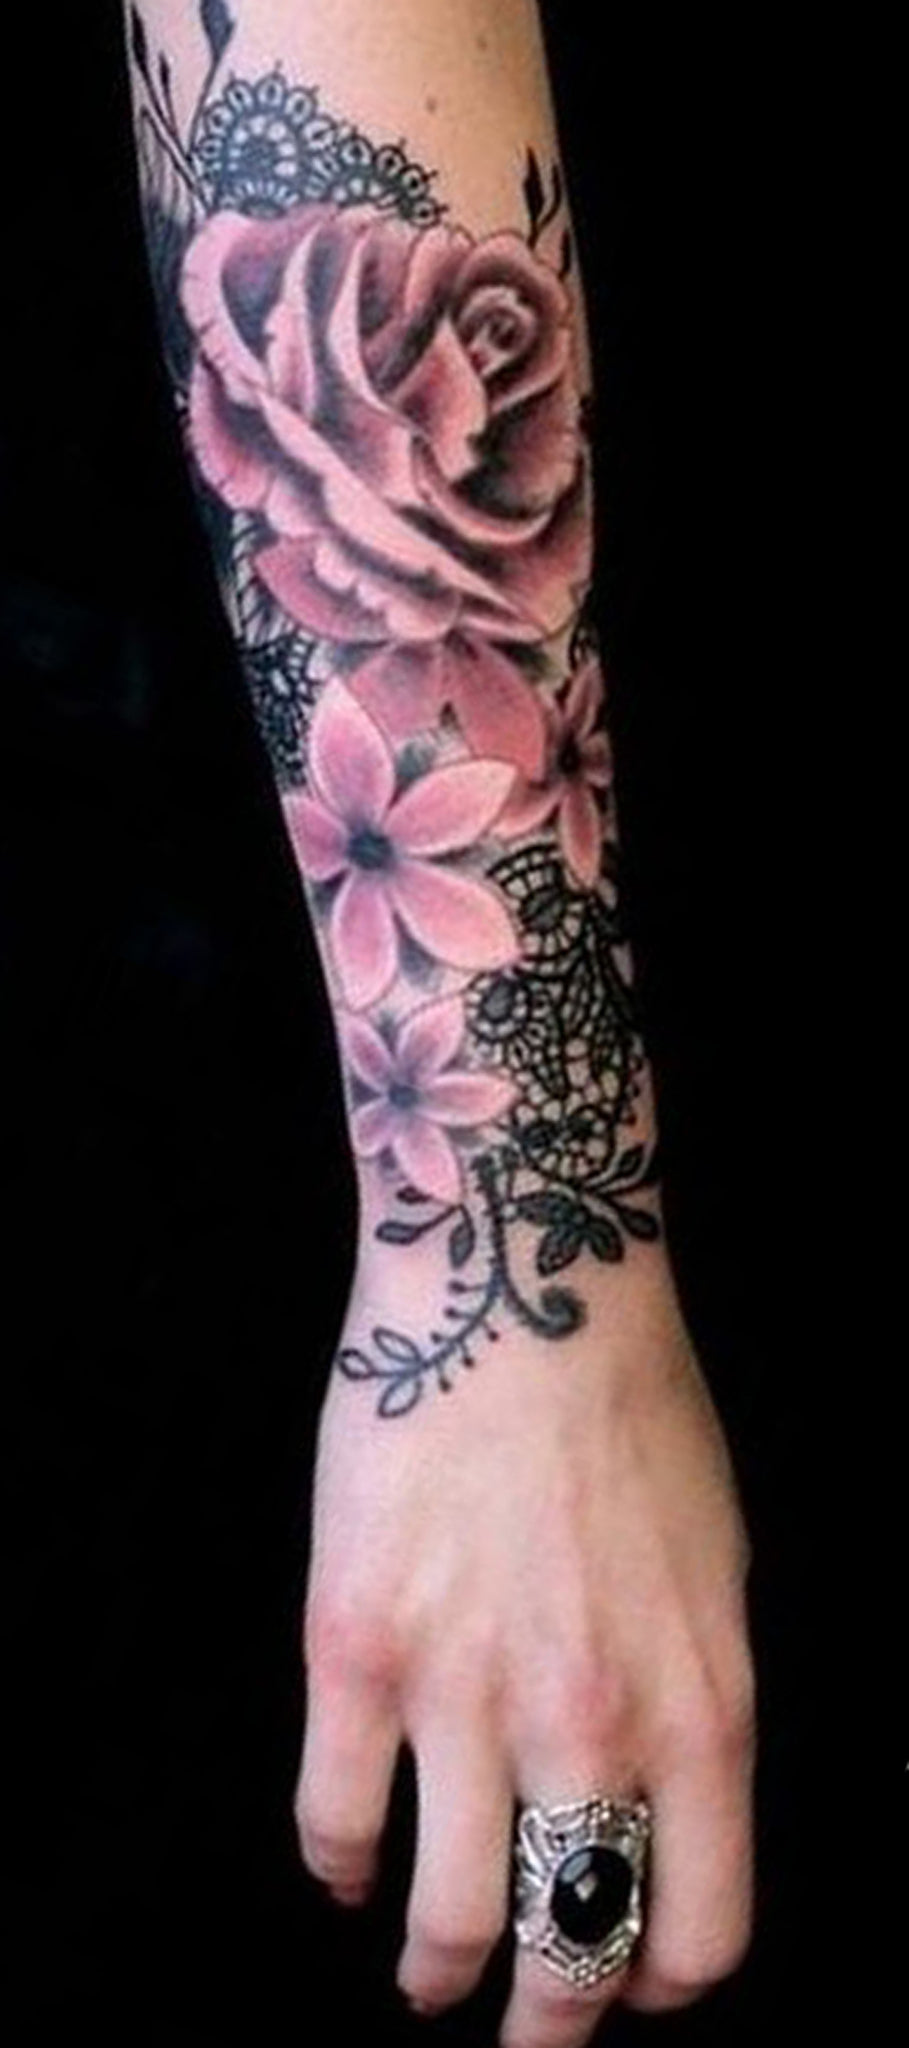 Watercolor Wild Flower Forearm Tattoo Ideas for Women - Black Lace Realistic Rose Arm Tat -  idées de tatouage d'avant-bras fleurs sauvages -  www.MyBodiArt.com 